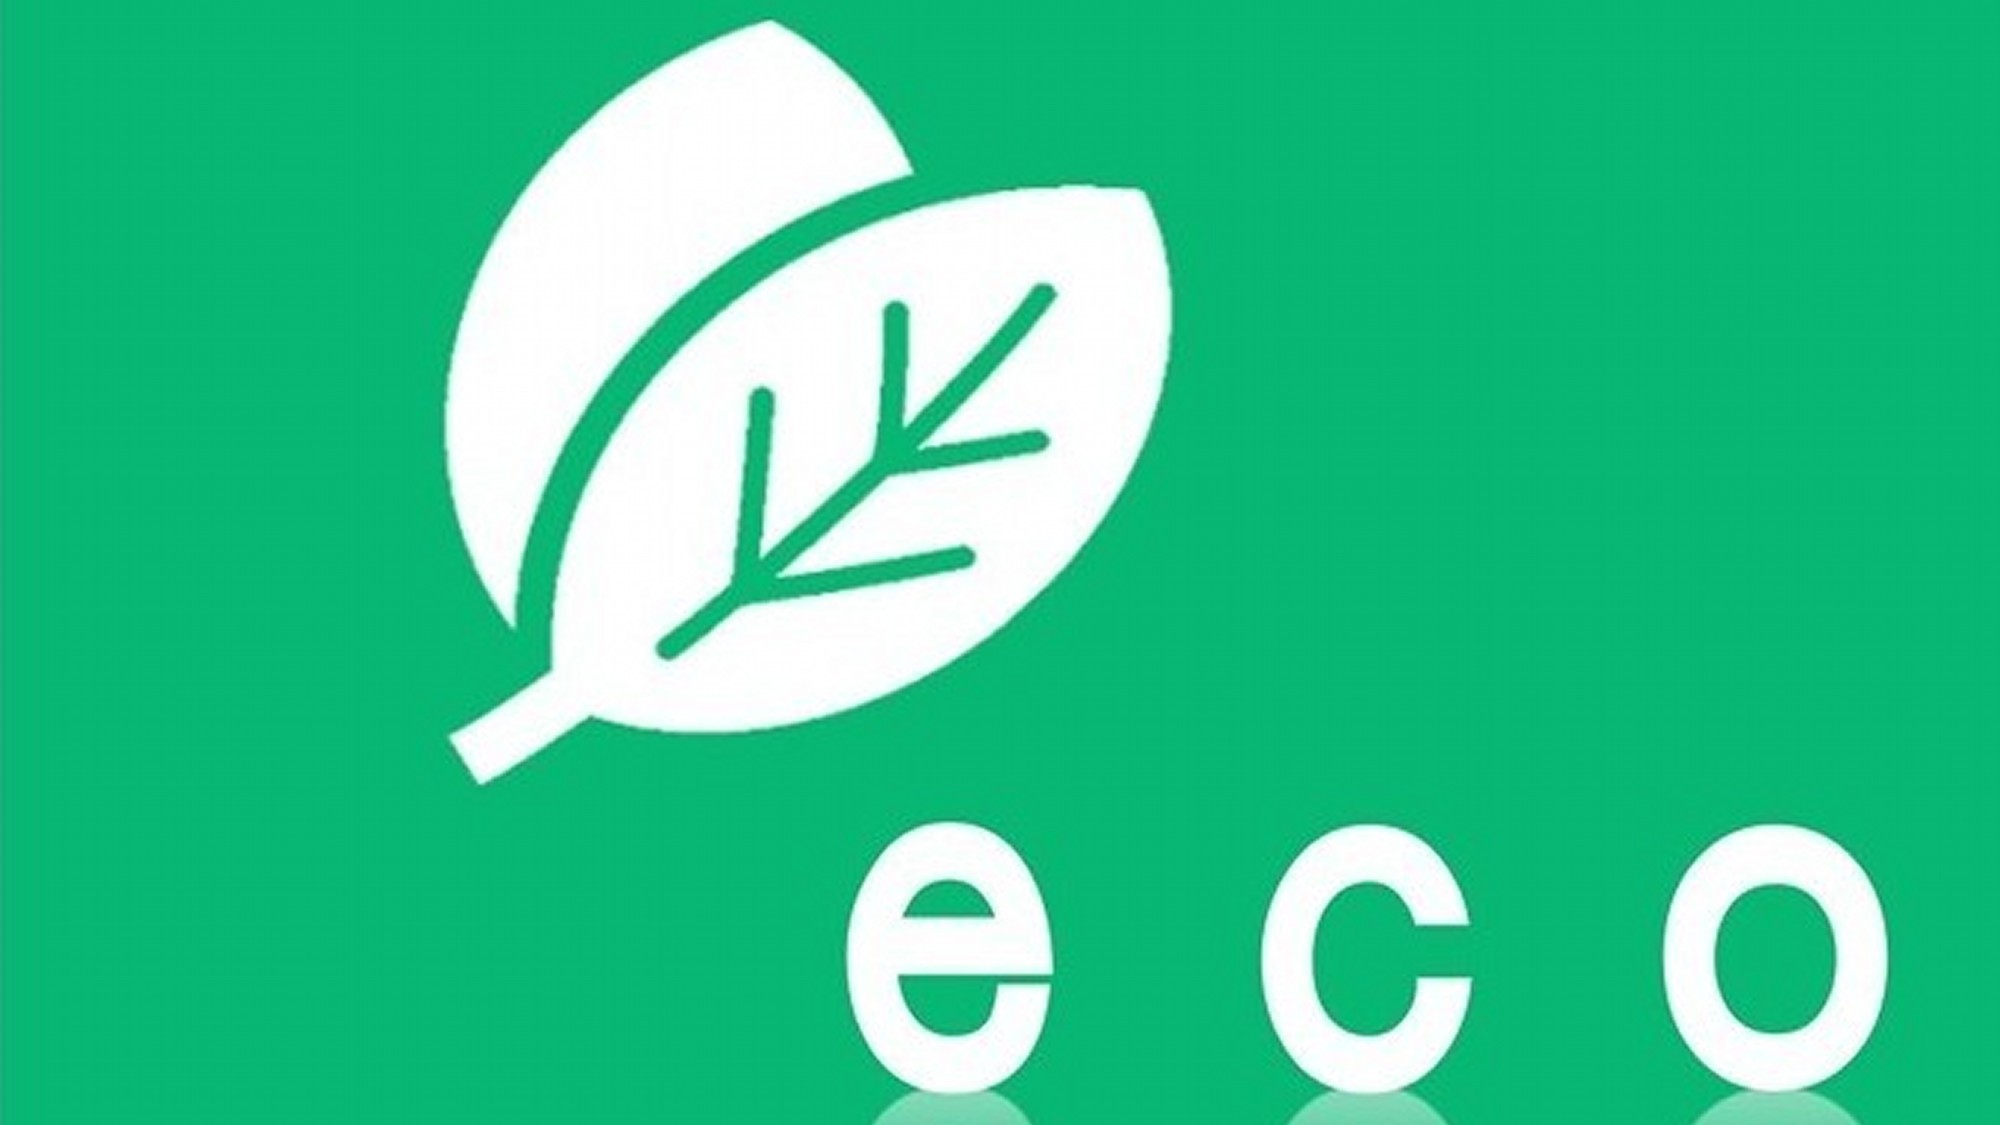 「静岡タウンホテル」のECO活動。地球環境保全の取り組みにご協力をお願い致します